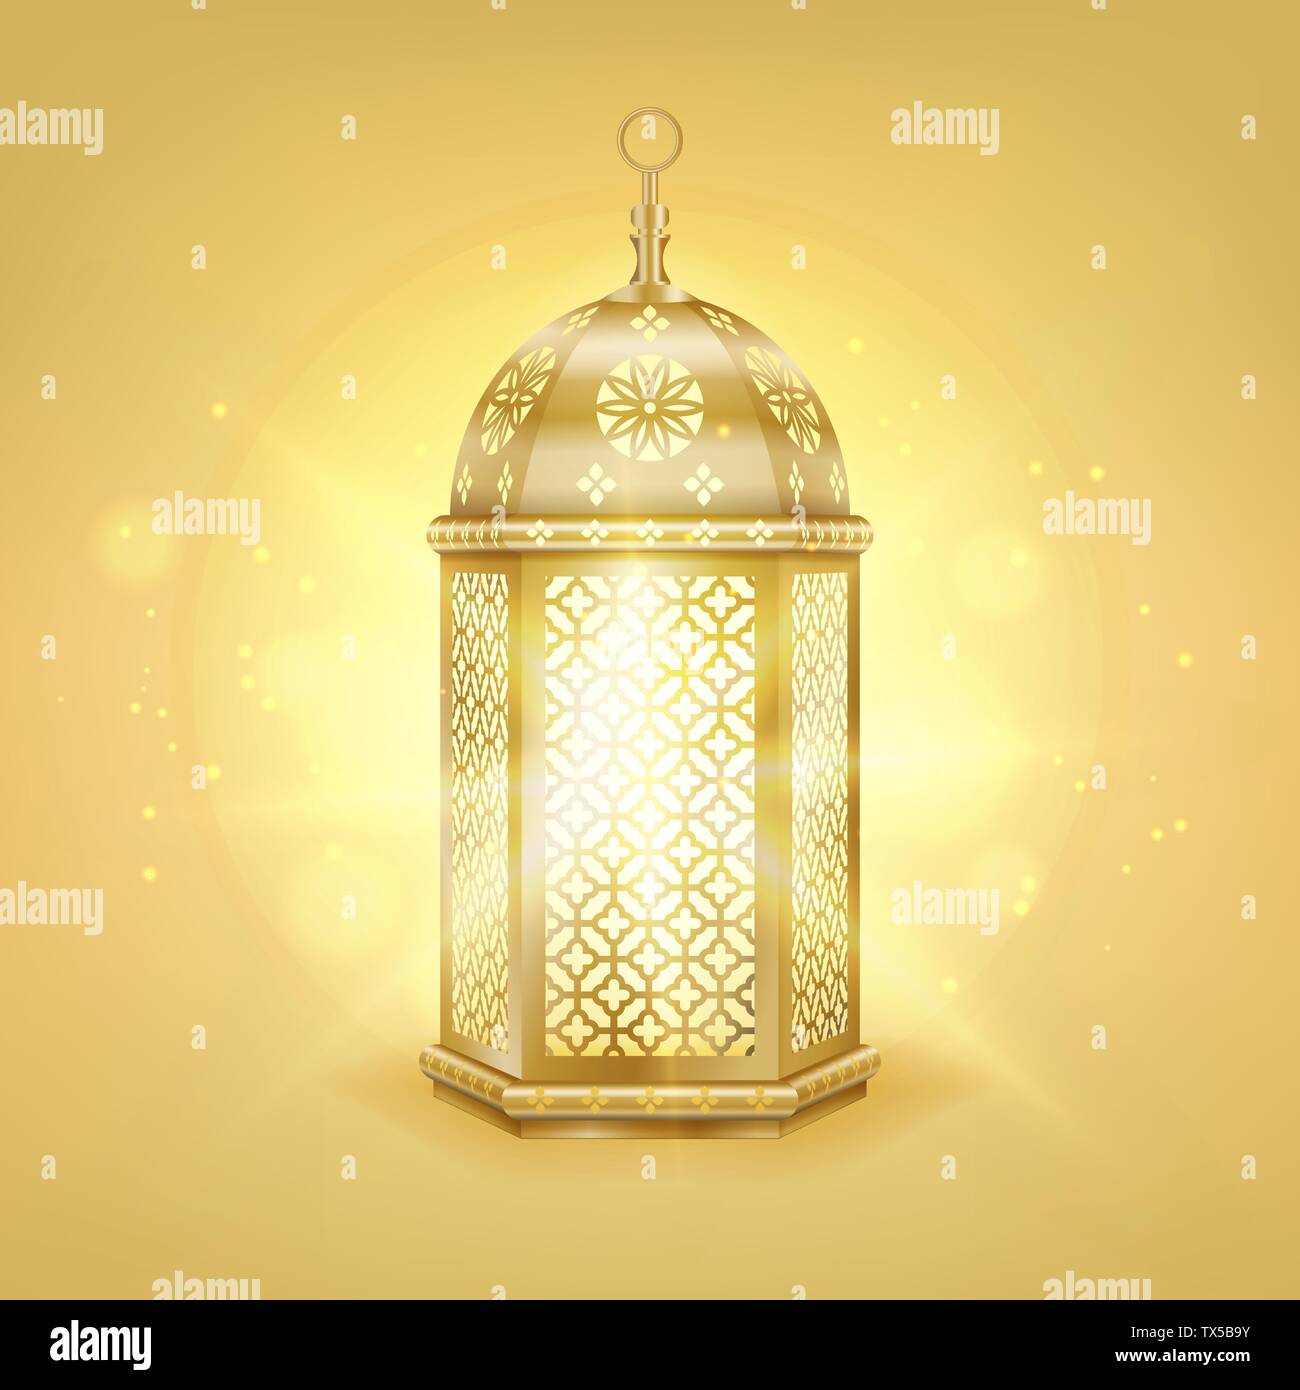 Einzige realistische Gold arabische Laterne - glänzend Gold vintage Metall Laterne mit arabischen Muster, Vector Illustration Stock Vektor